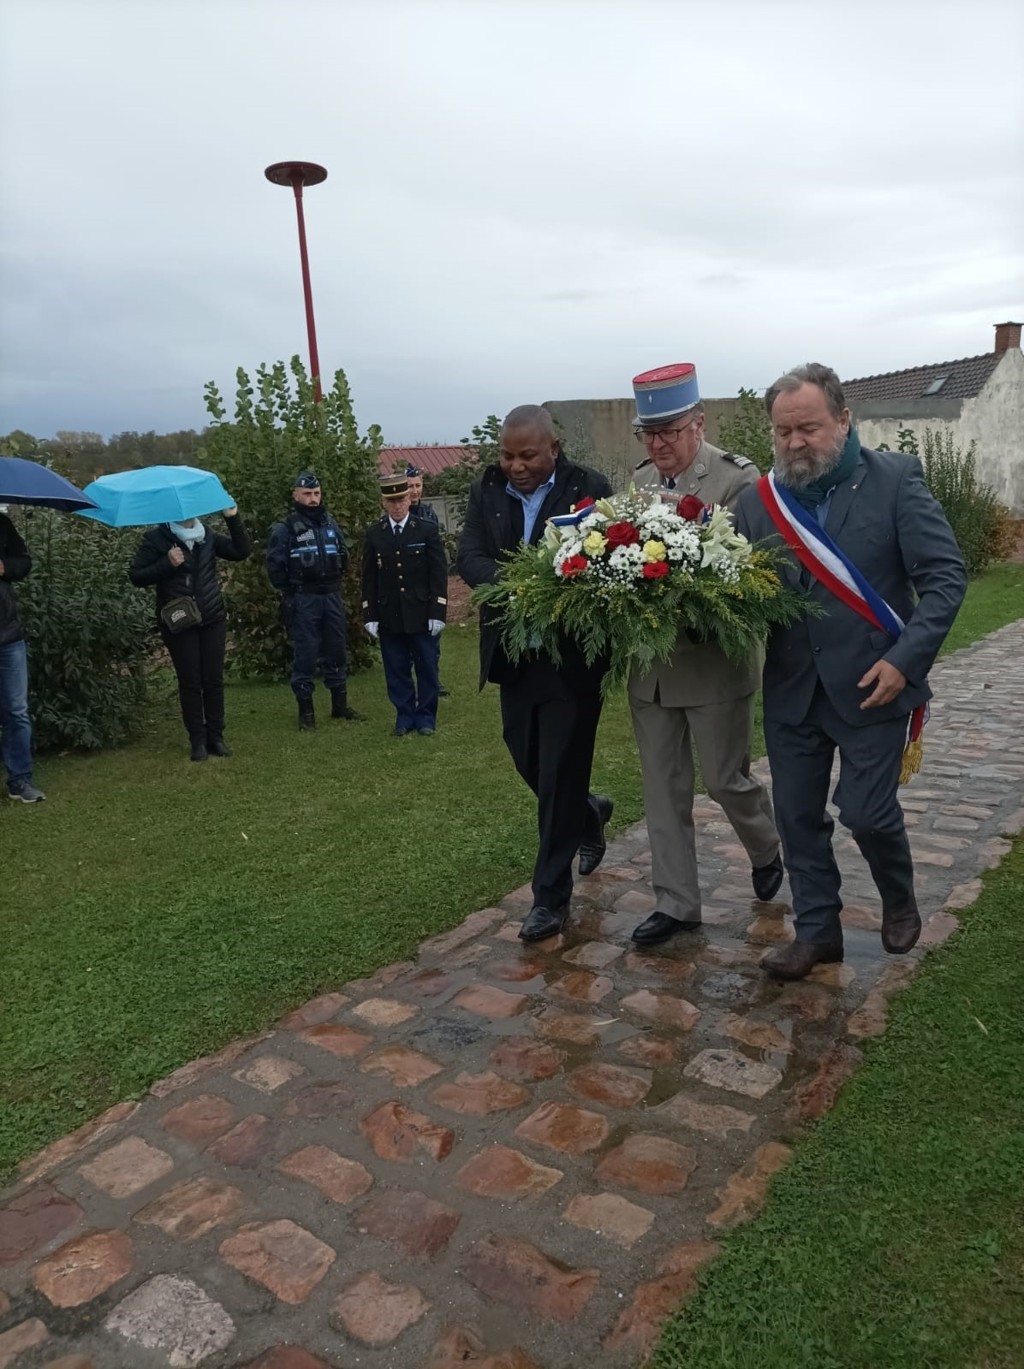  Séquence de la pose de gerbe de fleurs par Thierry Tassez, maire de Verquin à la stèle en hommage aux soldats africains de la Seconde Guerre mondiale